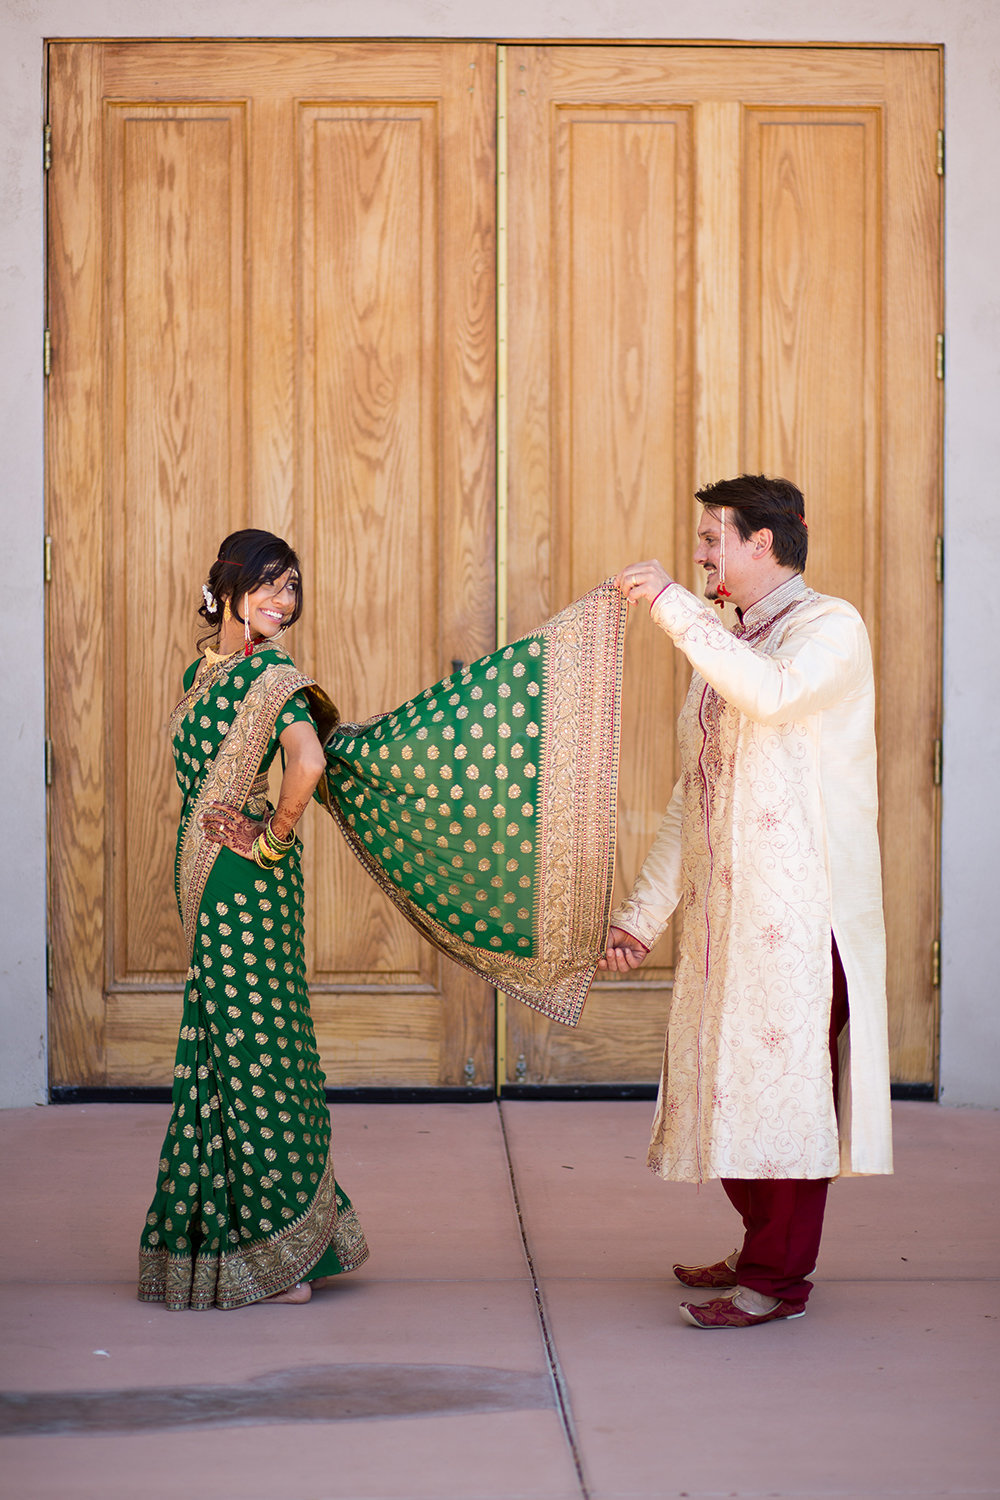 Fun pose for a an Indian bride in a Sari